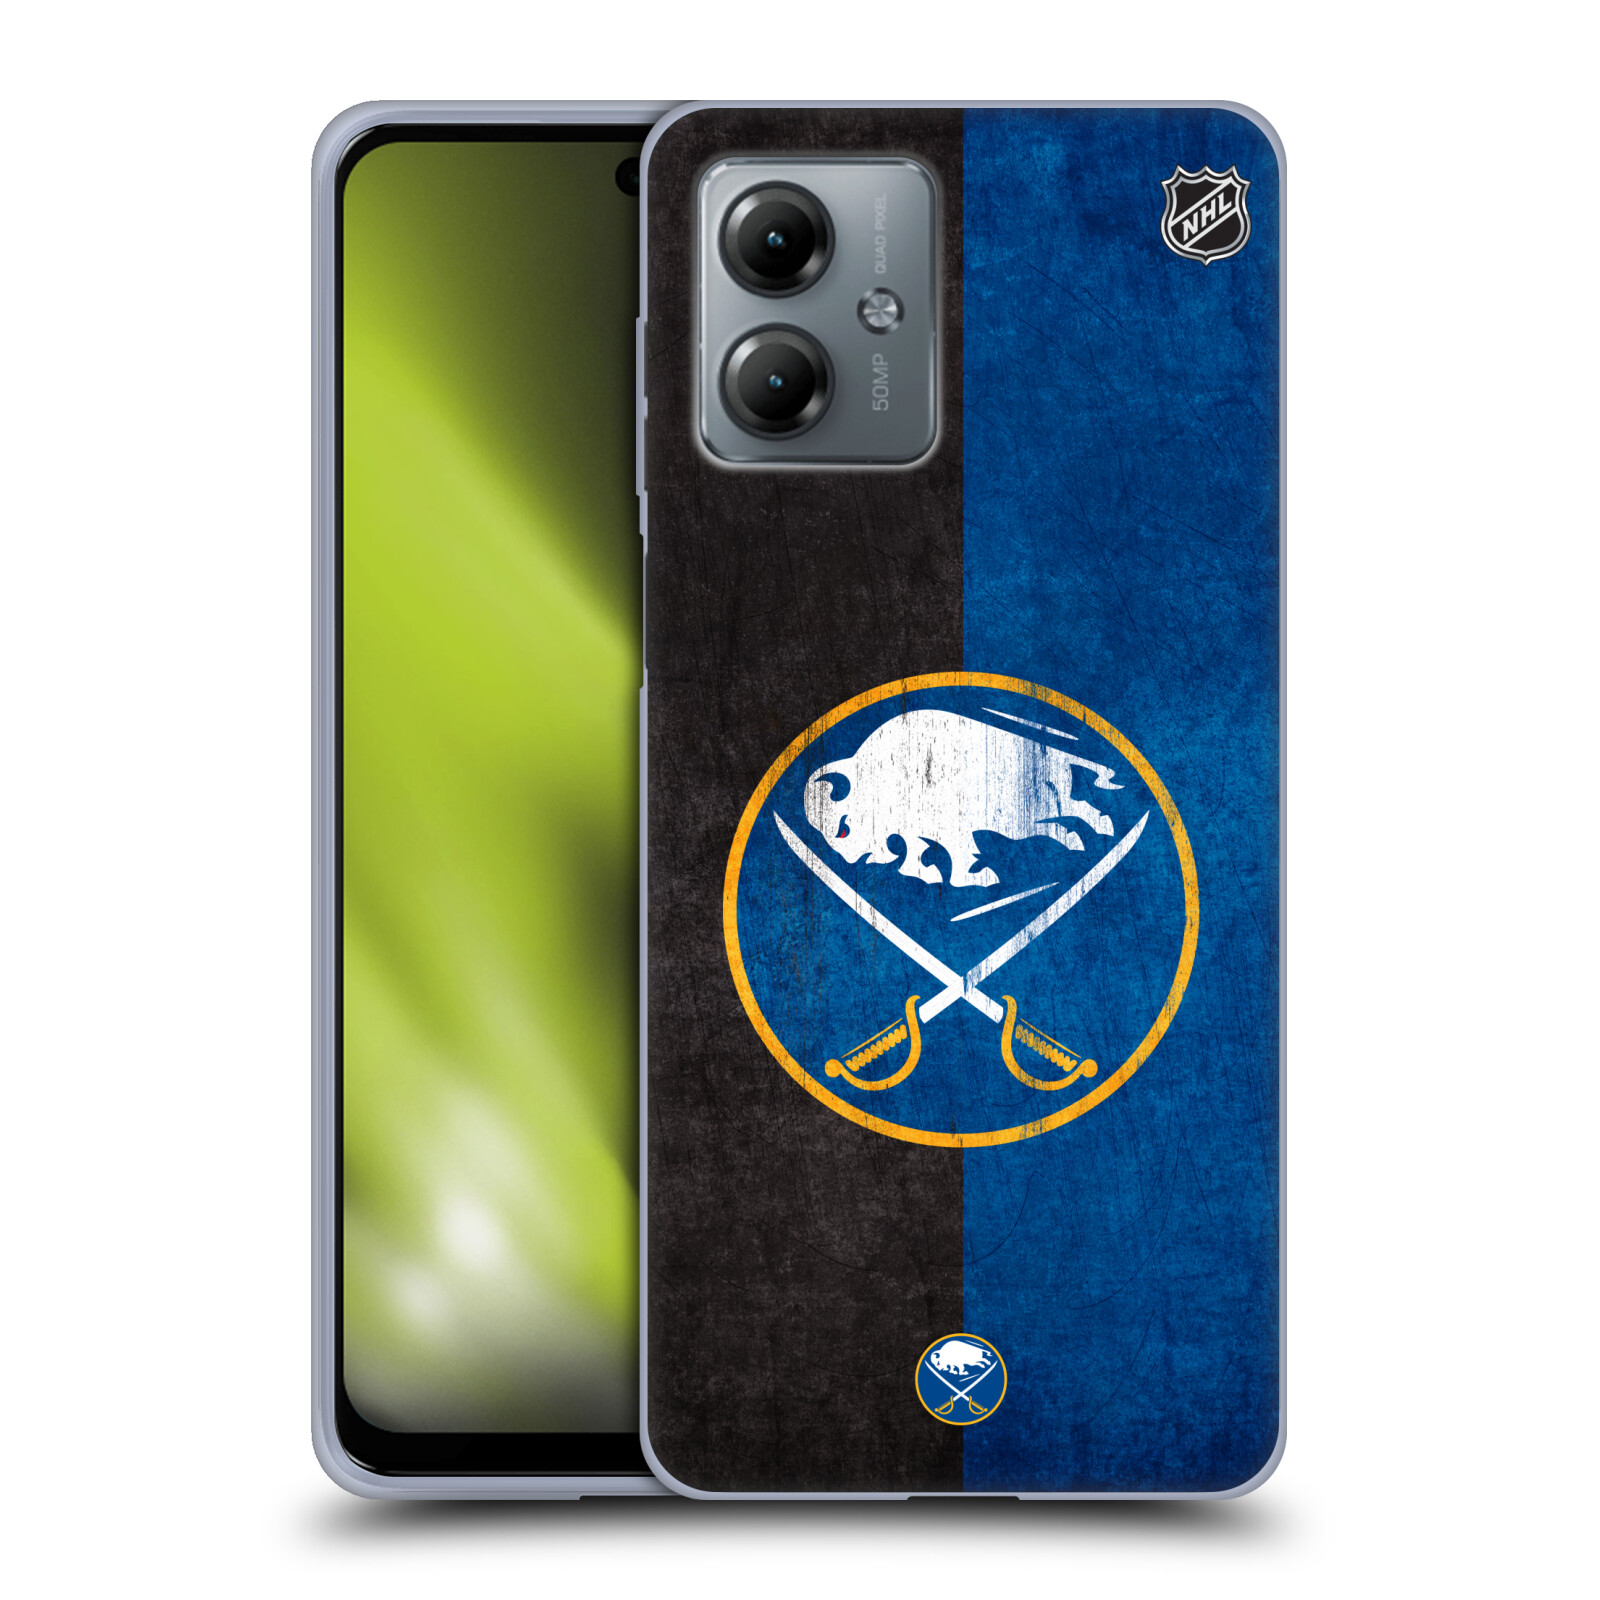 Silikonové pouzdro na mobil Motorola Moto G14 - NHL - Půlené logo Buffalo Sabres (Silikonový kryt, obal, pouzdro na mobilní telefon Motorola Moto G14 s licencovaným motivem NHL - Půlené logo Buffalo Sabres)